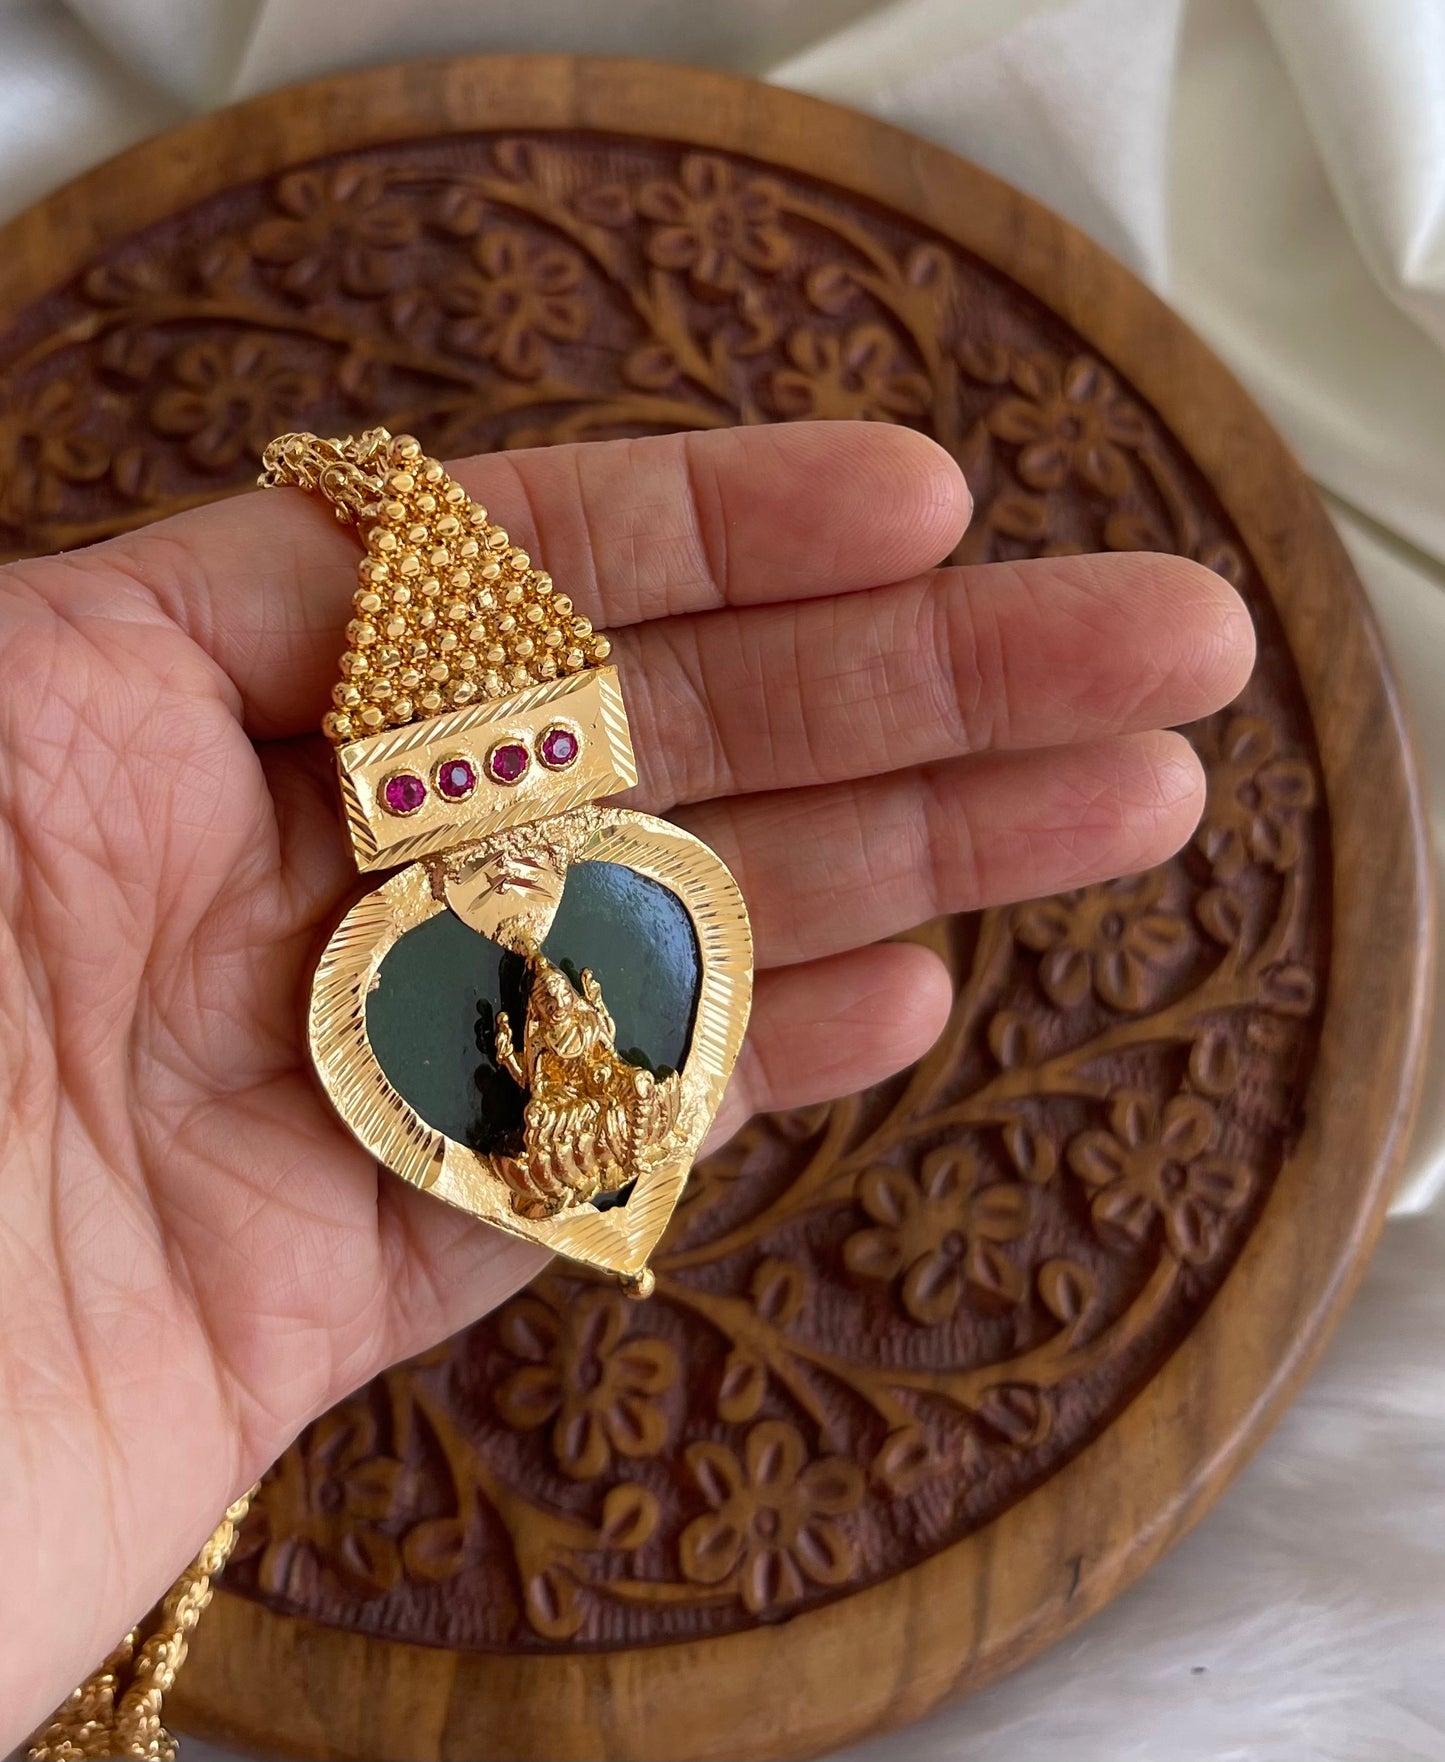 Gold tone Kerala style Green gopi shape Lakshmi pendant with chain dj-42523